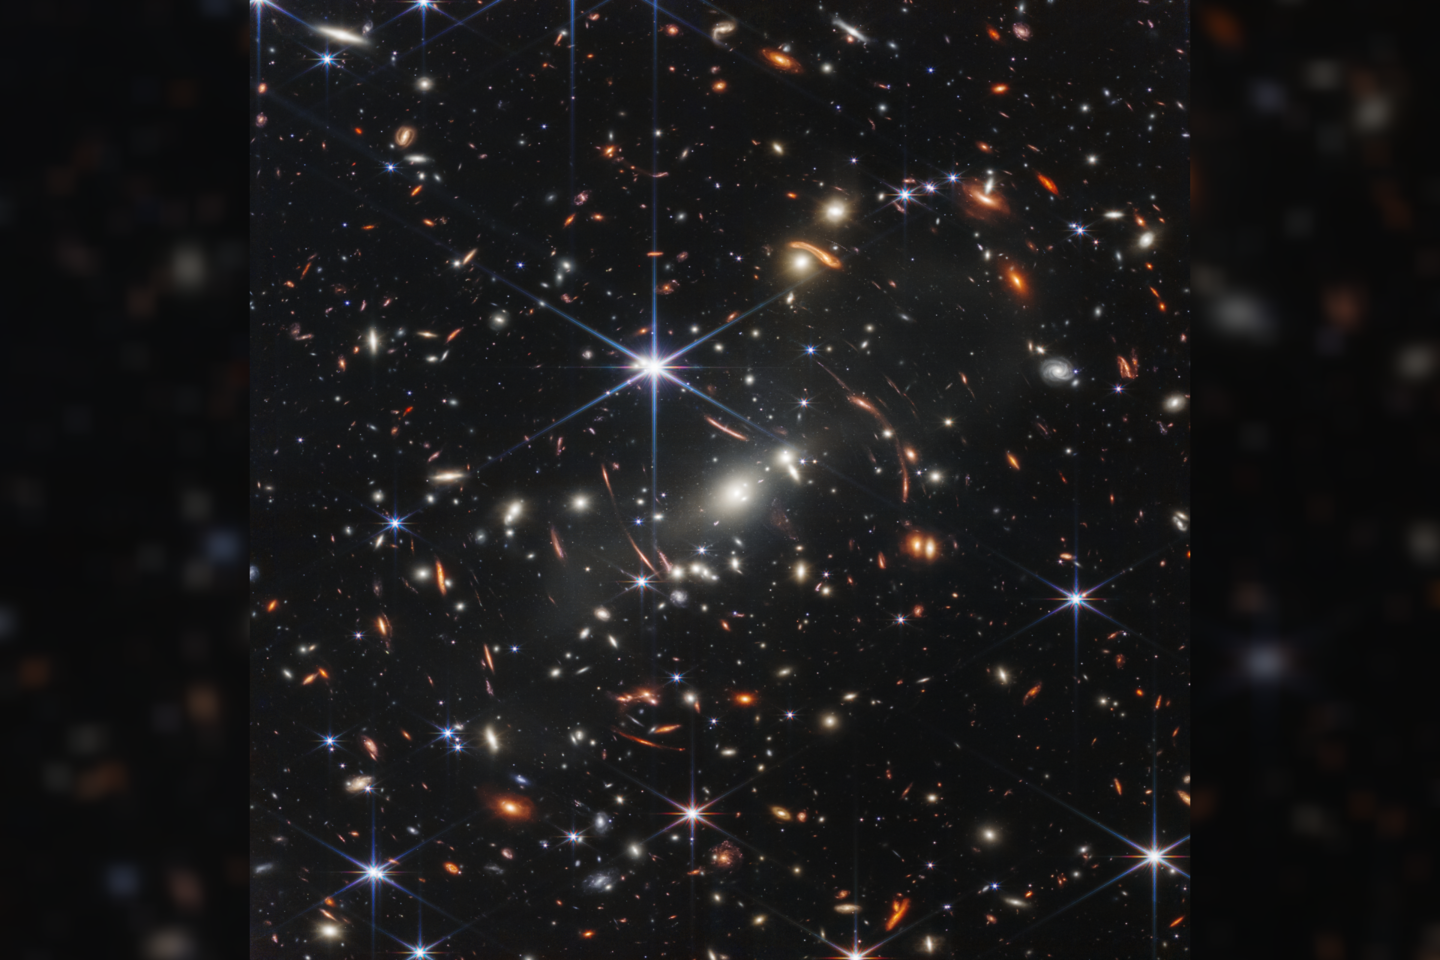  NASA kosminis teleskopas Jameso Webbo kosminis teleskopas (JWST) sukūrė giliausią ir ryškiausią iki šiol infraraudonųjų spindulių spektro tolimosios Visatos nuotrauką.<br> NASA nuotr.